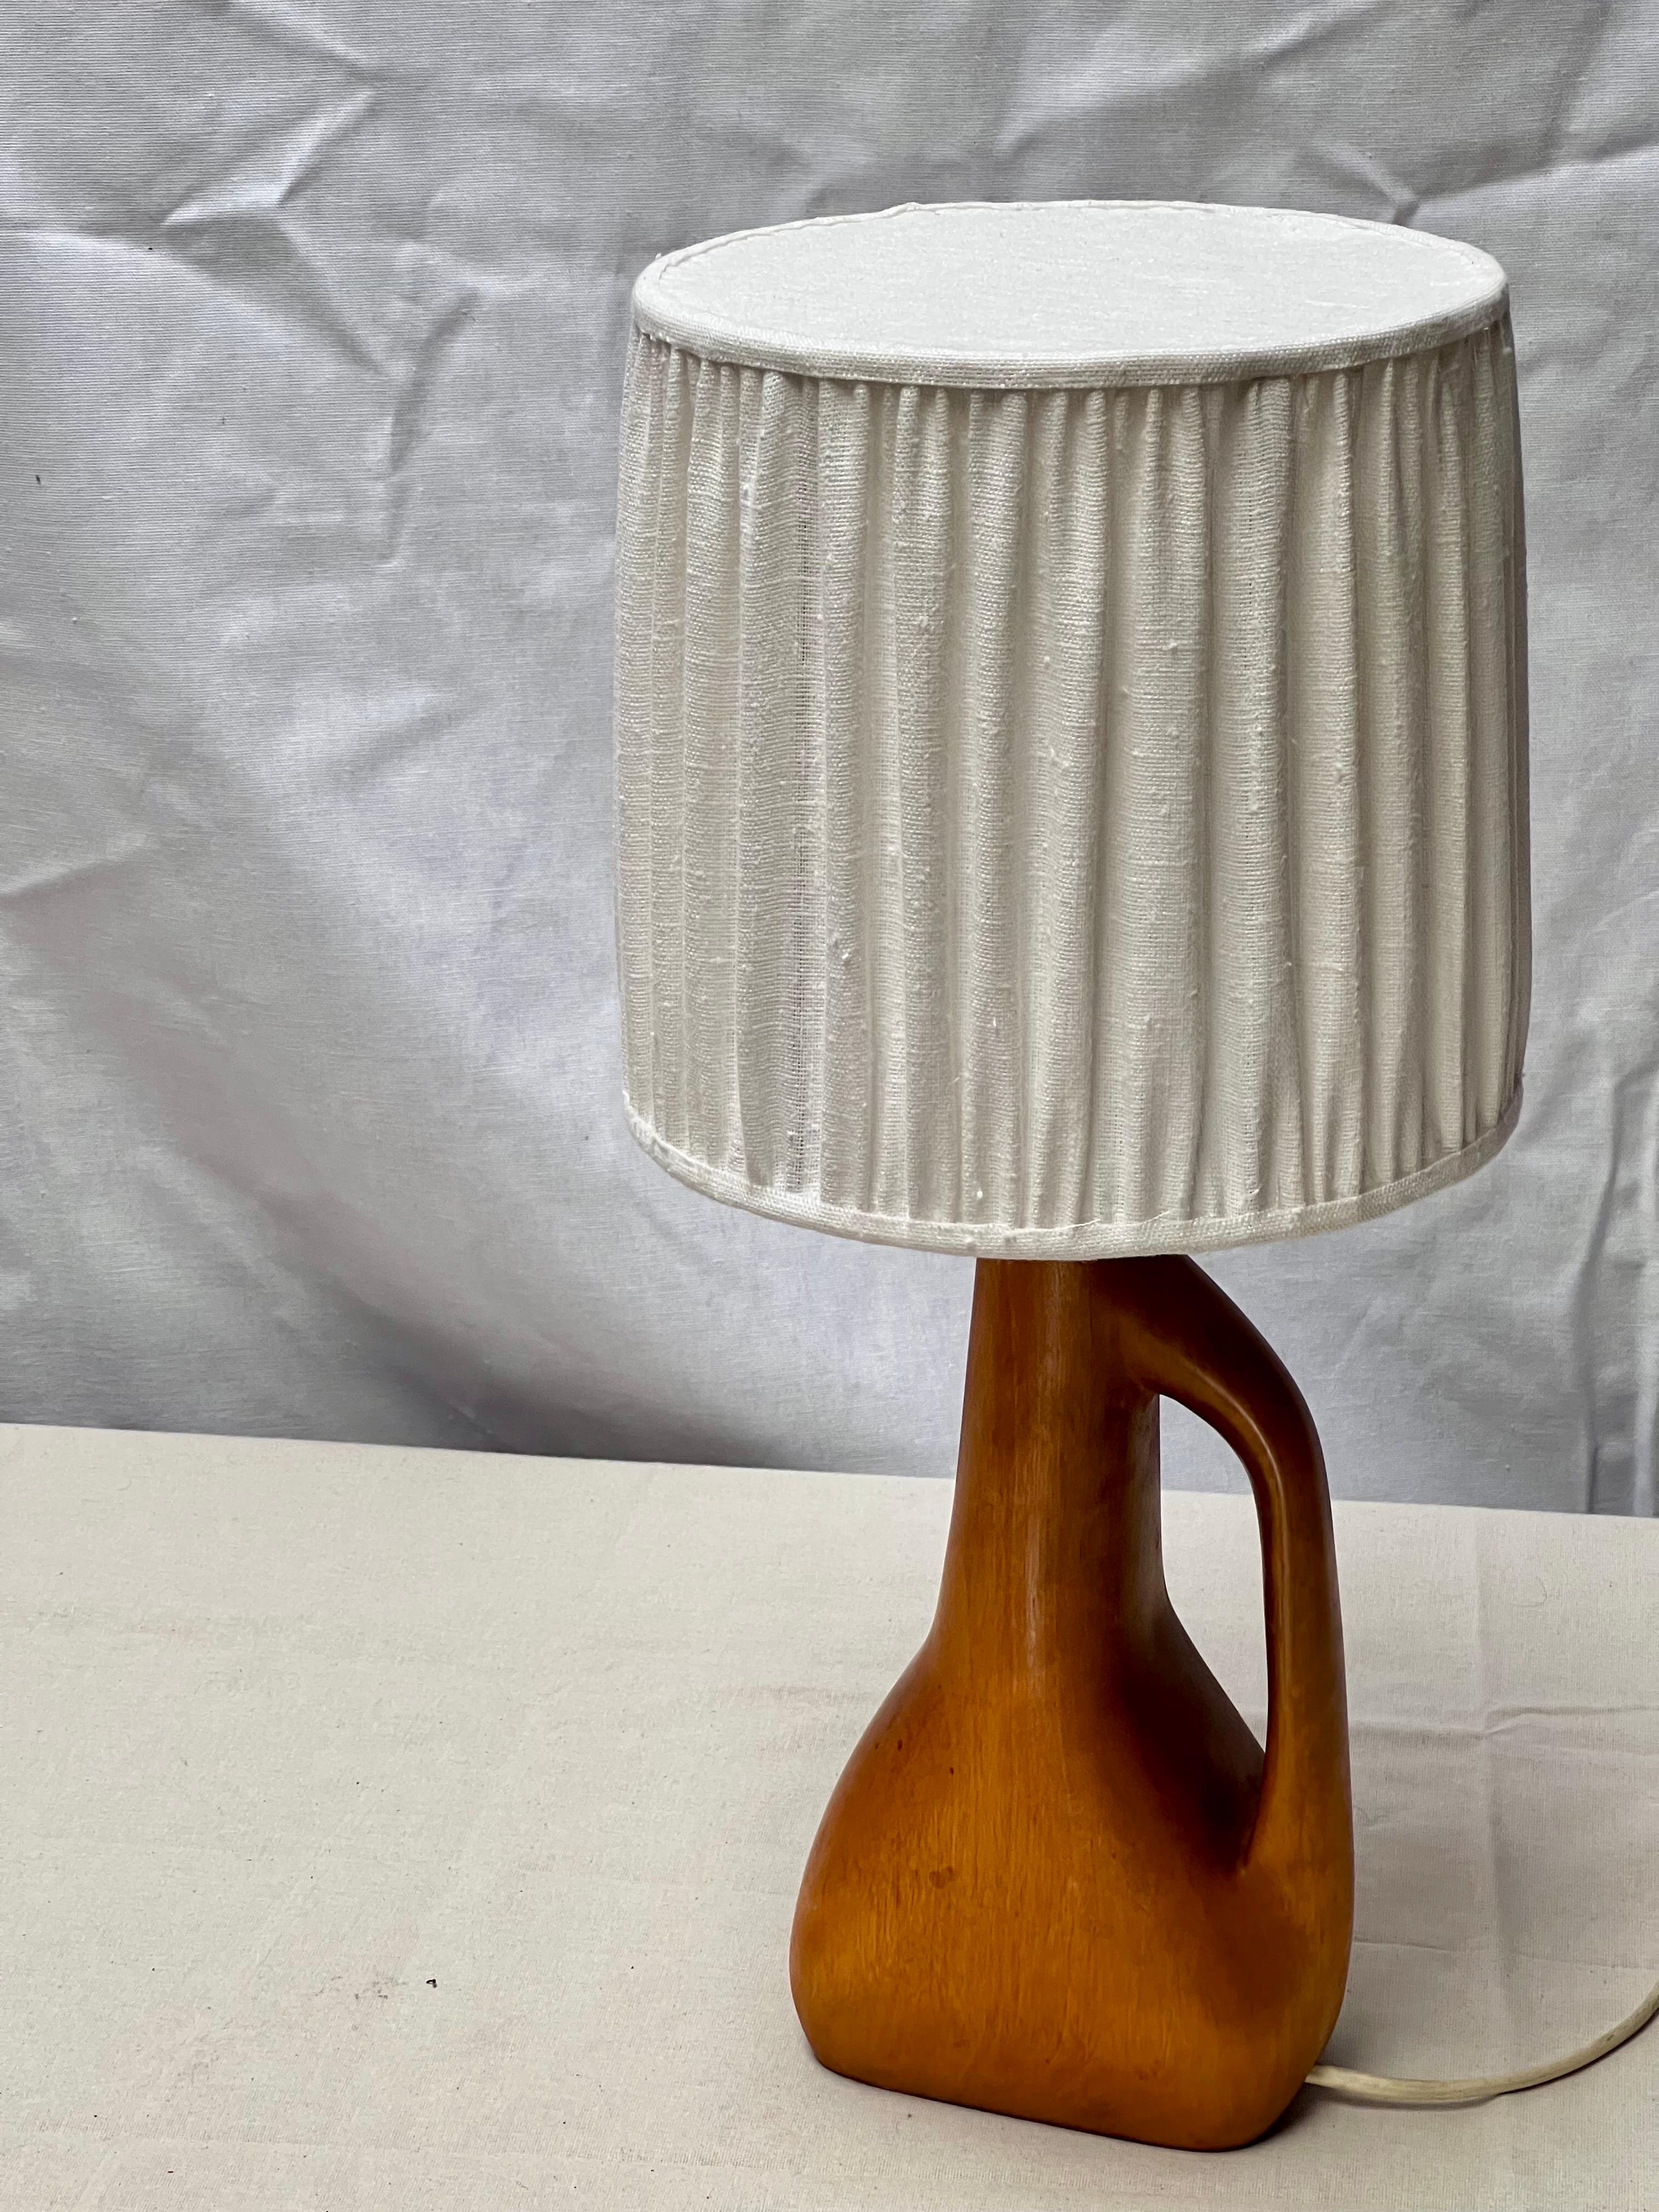 Lampe décorative en bois dur fabriquée en France dans les années 1940 / 1950. Fabriqué en bois dur, il a la forme sculpturale d'une cruche. La hauteur totale de cette lampe, abat-jour compris, est de 50 cm. L'abat-jour a une hauteur de 23 cm et un